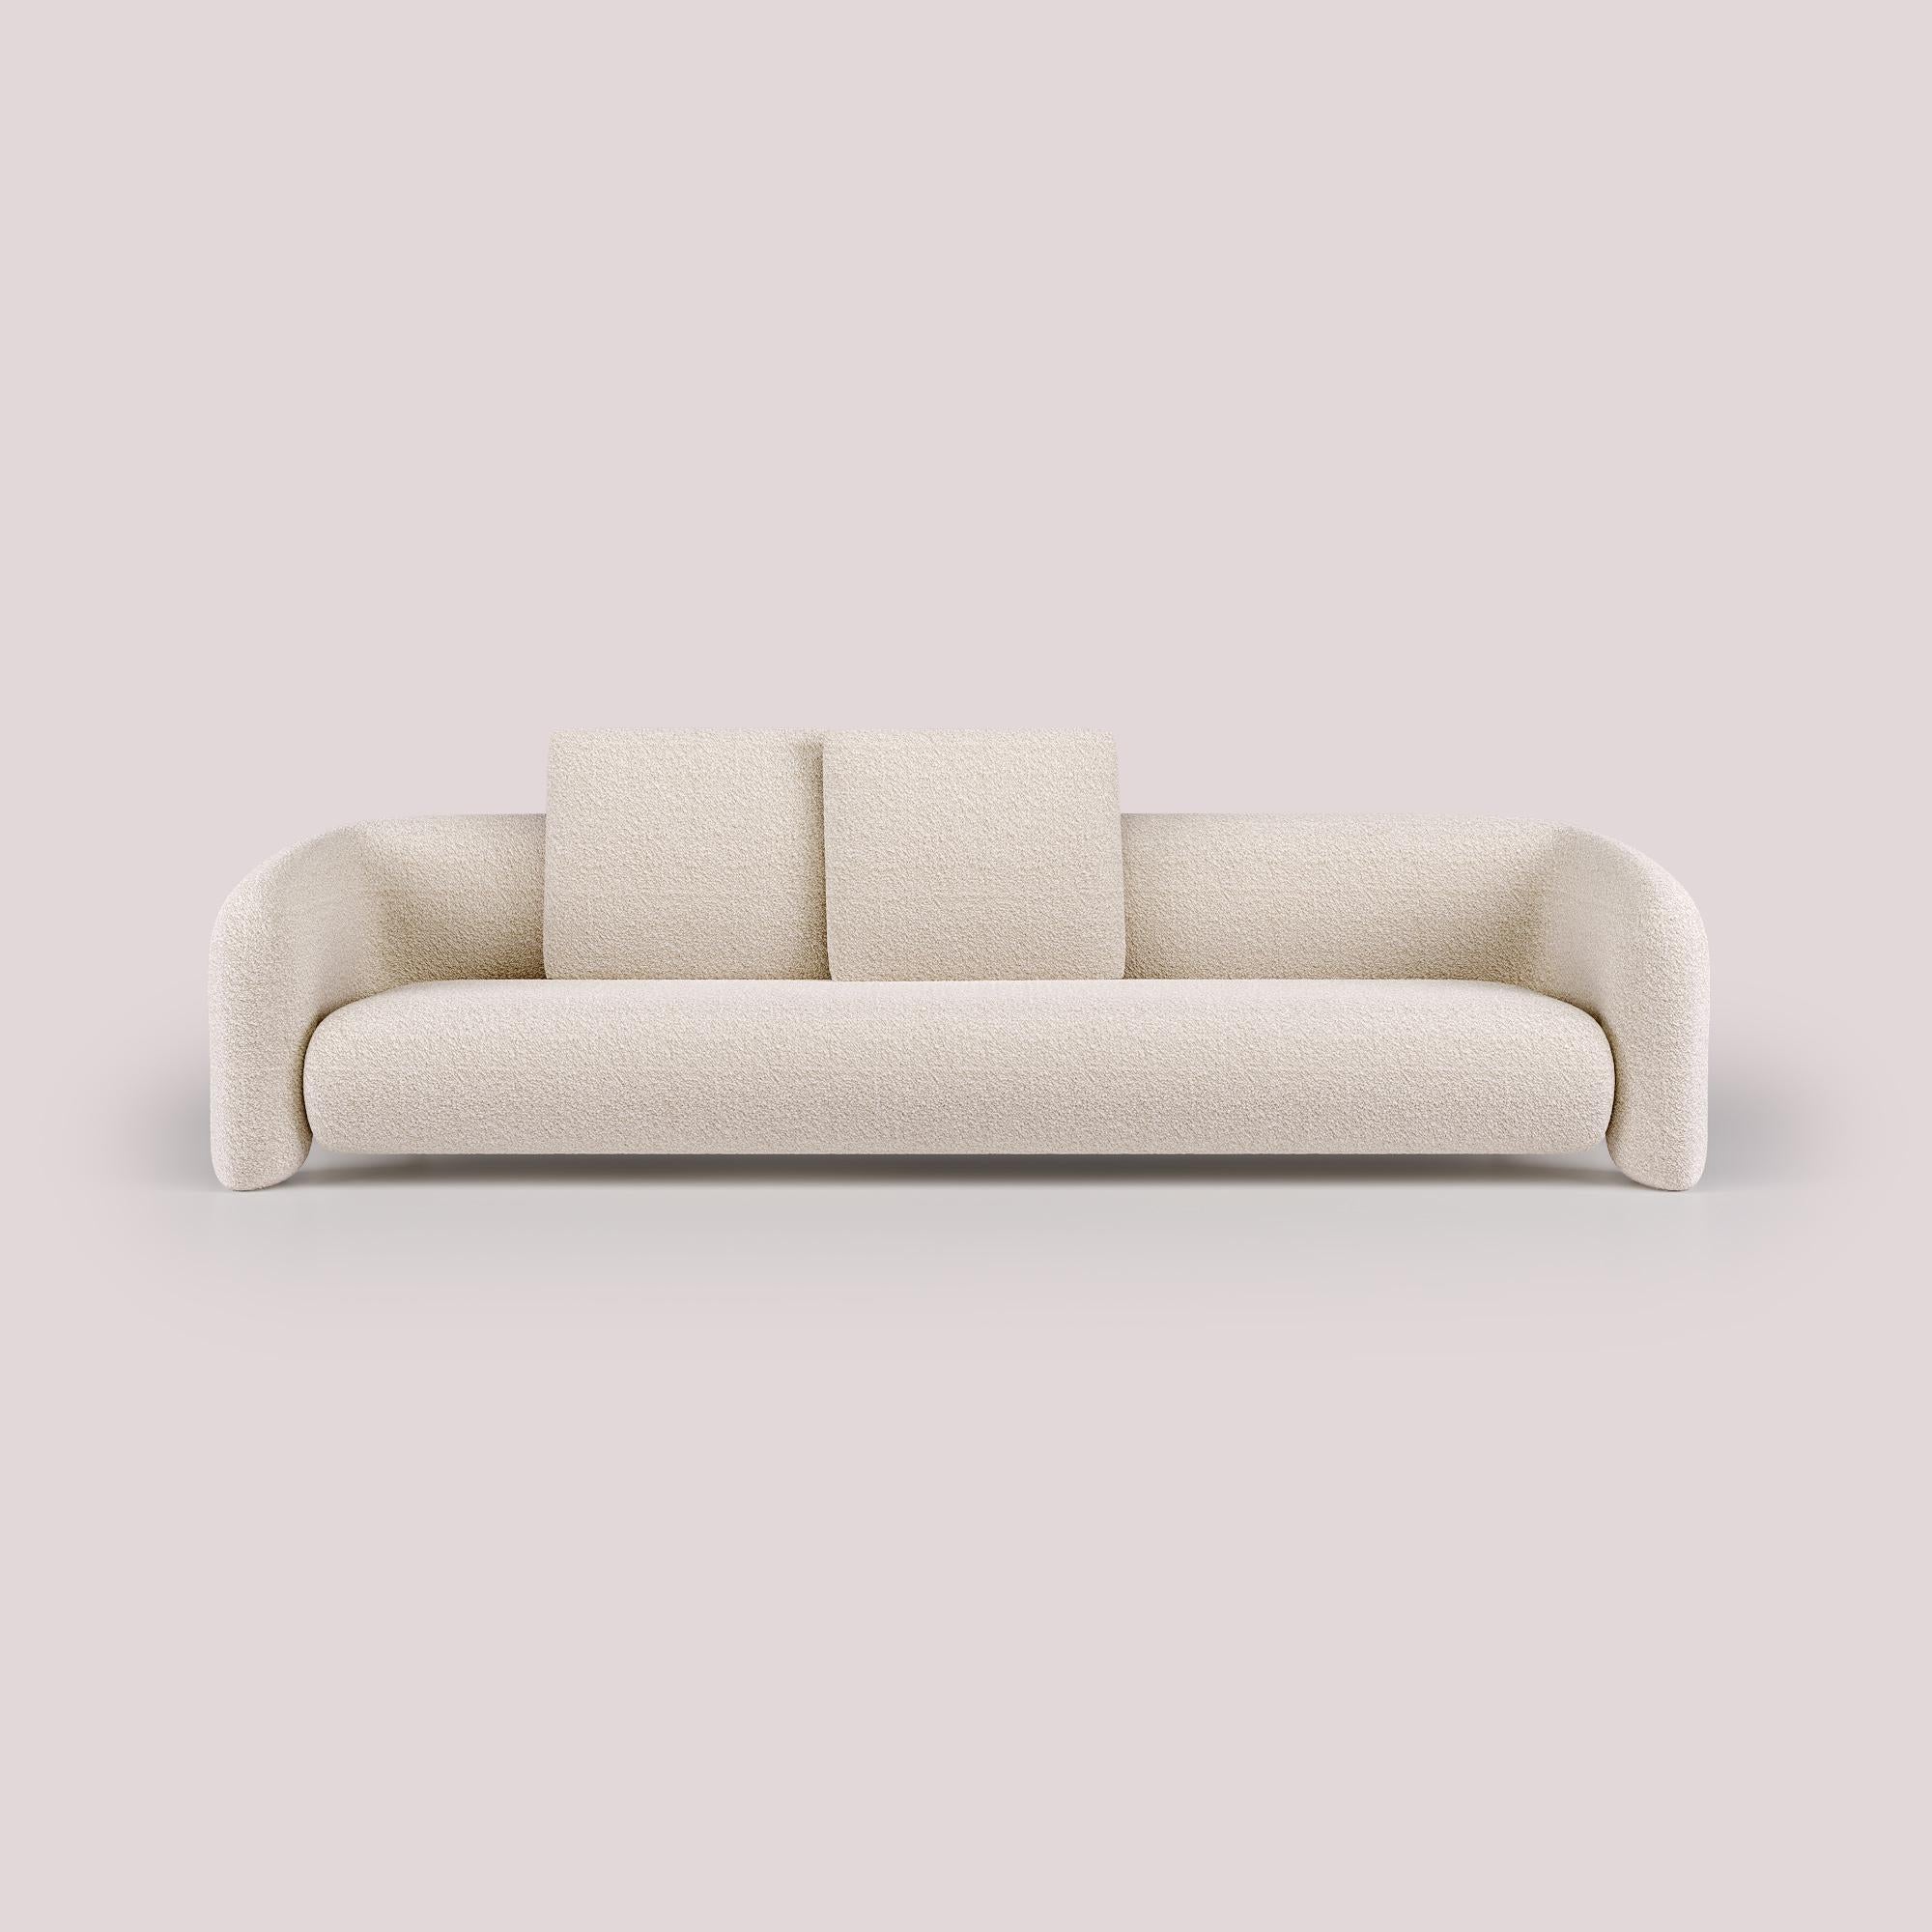 Mit seinem schlanken, modernen Design bietet diese Version des Bold-Sofas ein neues Maß an Komfort und bietet viel Platz für pure Entspannung. Die klaren Linien und die geradlinige Form, ergänzt durch die offenen Arme, verstärken das Gefühl von